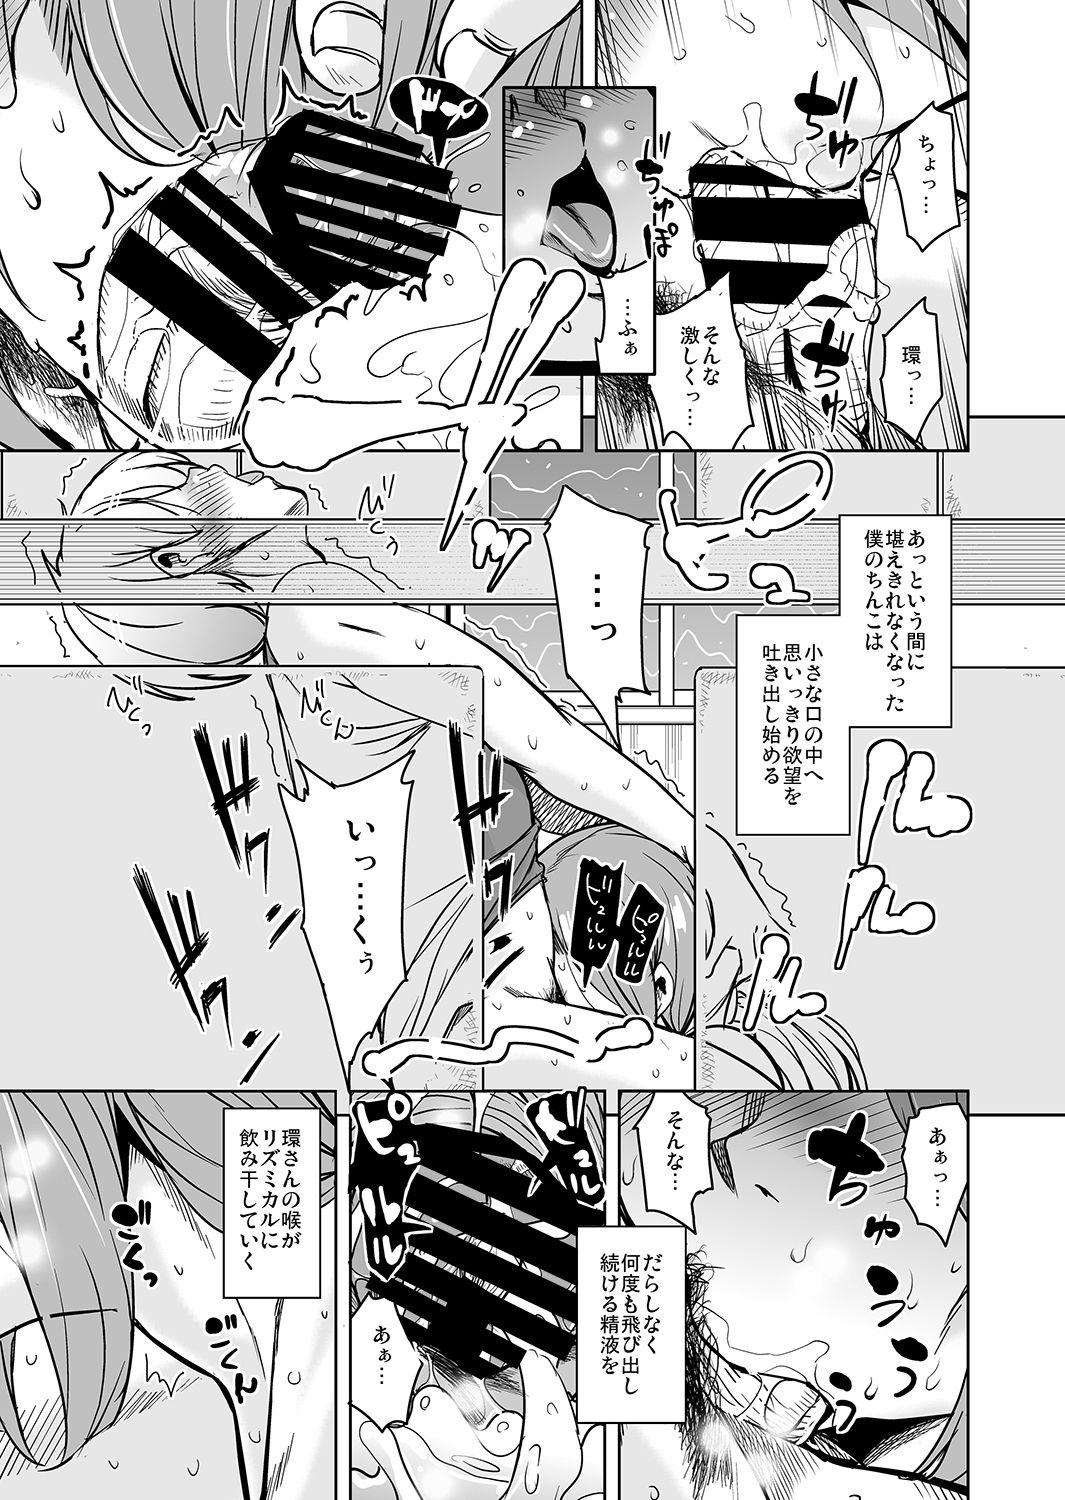 Bucetuda Ritou e Tenkou Shitara Host Family ga Dosukebe de Komaru 6 - Original Wam - Page 11